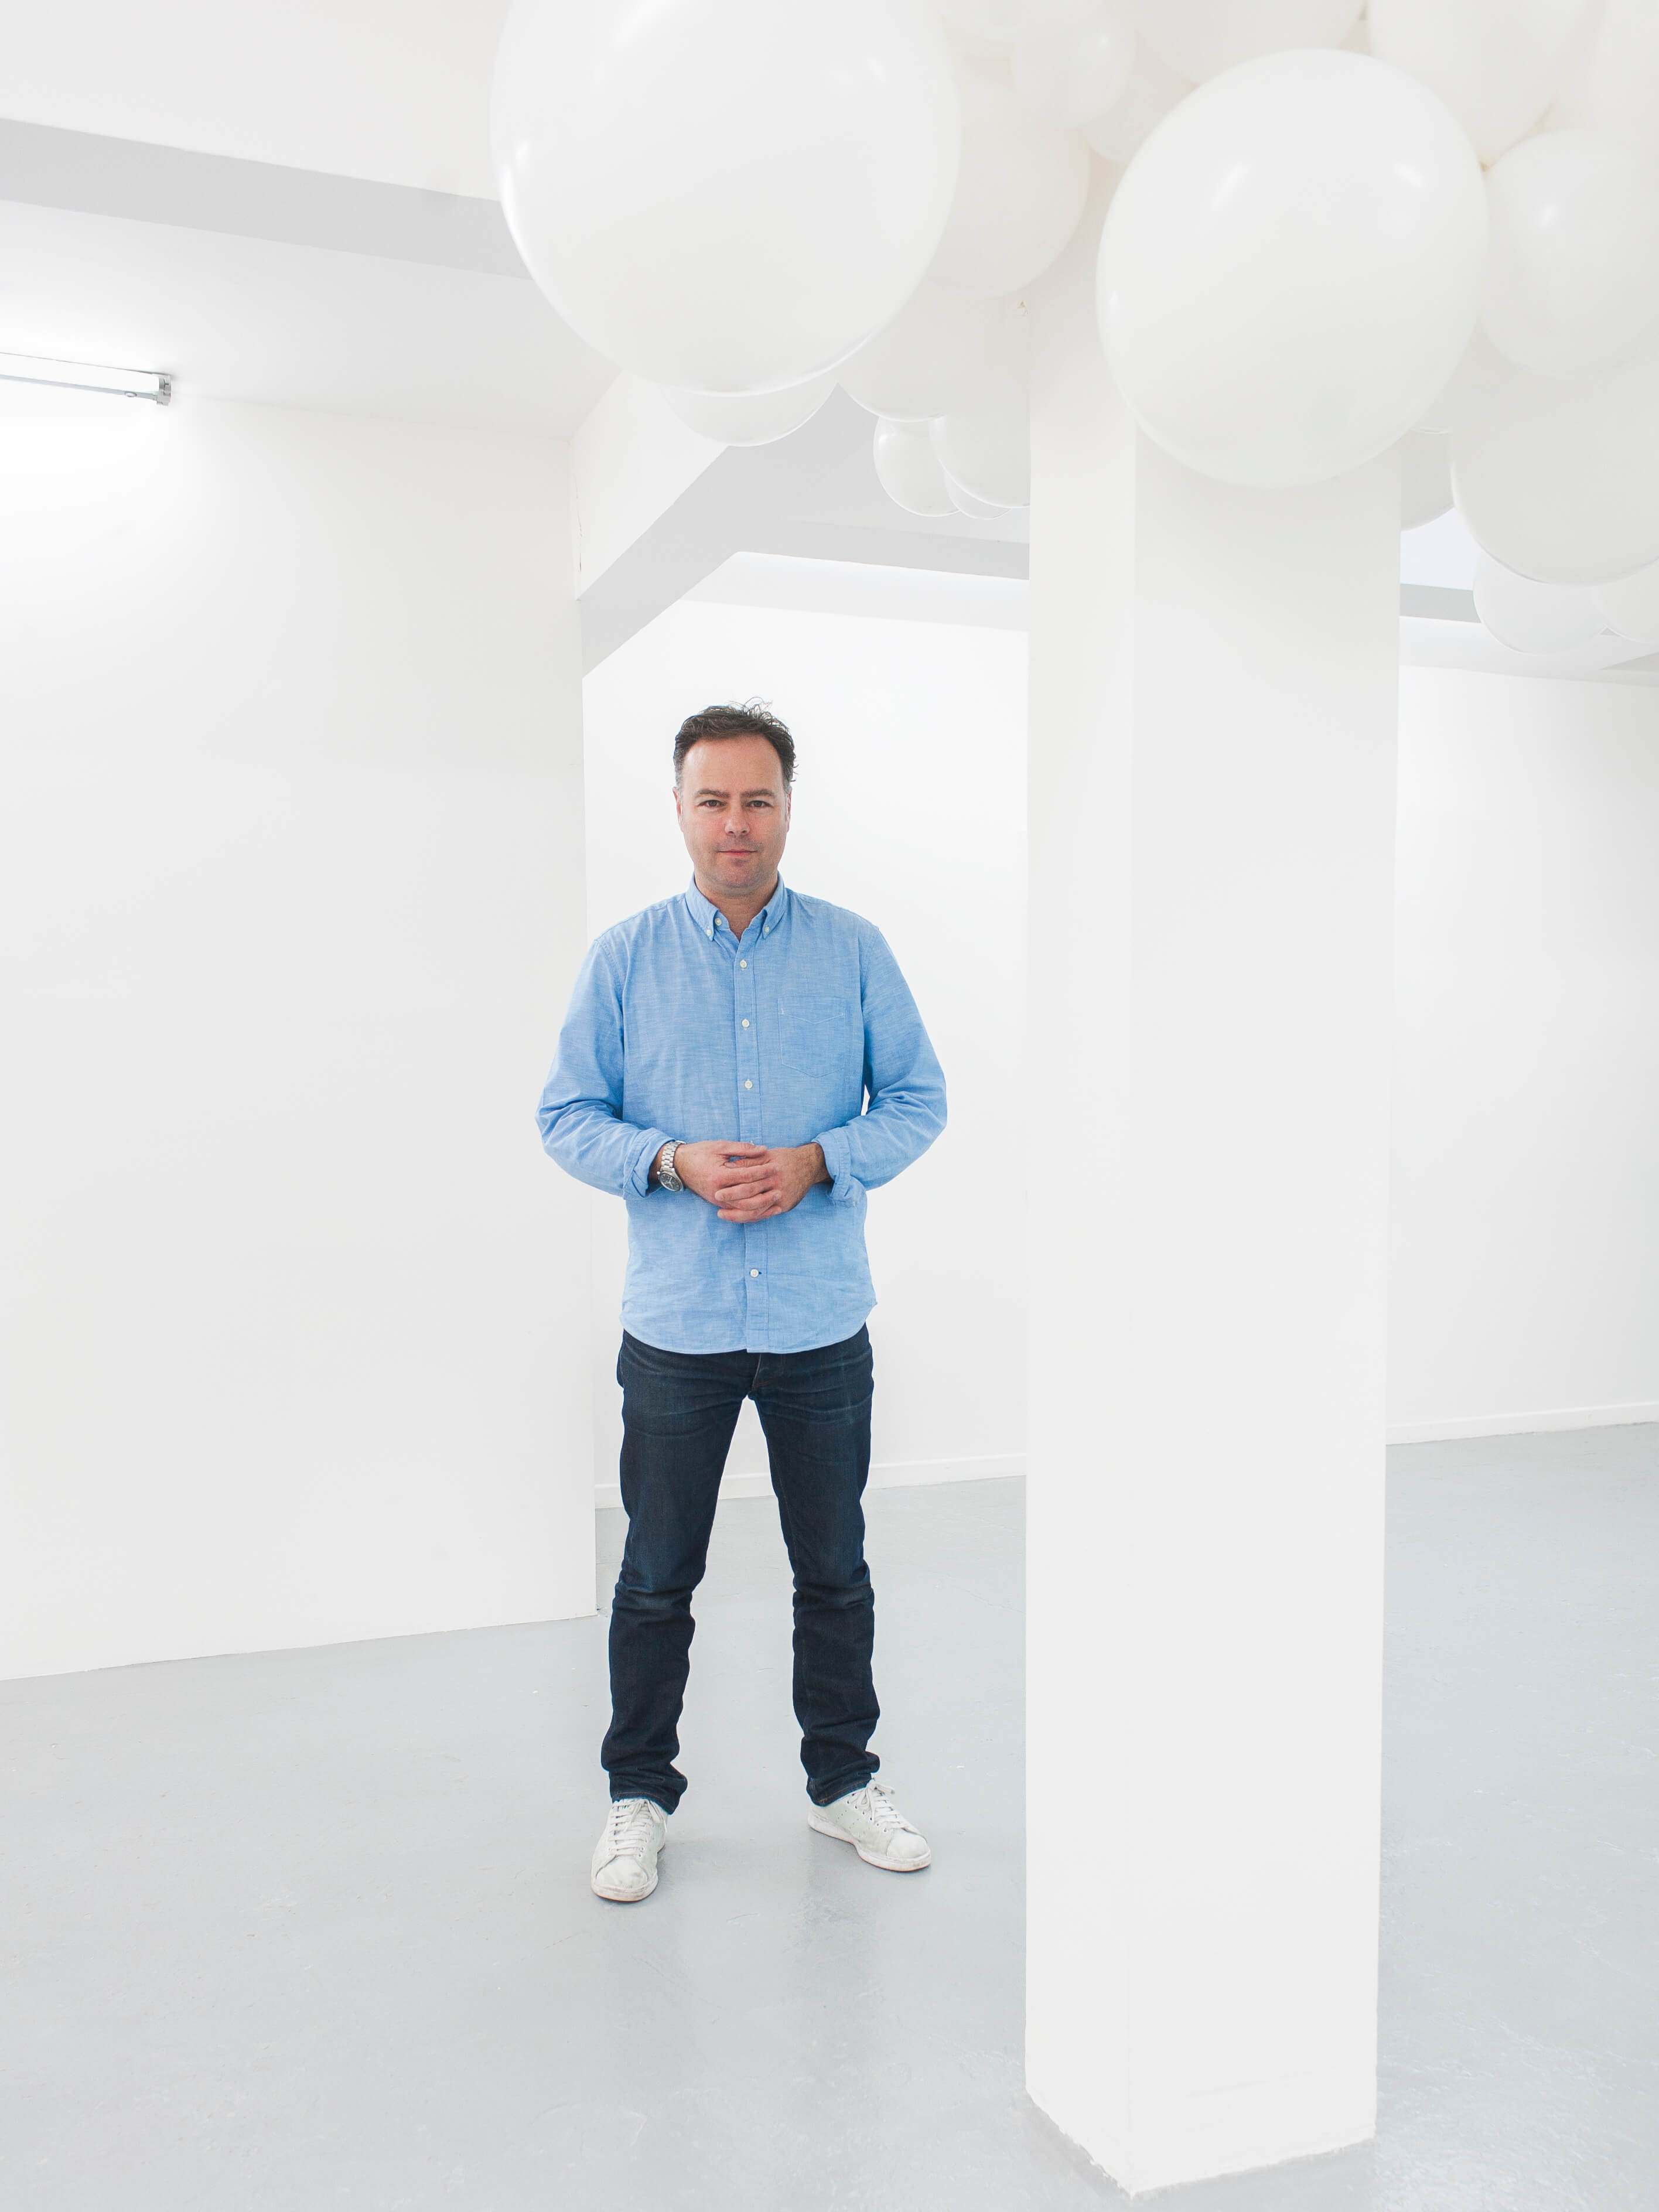 L’artiste Charles Petillon est connu pour ses œuvres d’art mettant en scène des ballons. Son installation utilisant des tissus Sunbrella a été présentée lors de l’exposition SuperDesign de Milan en 2017.